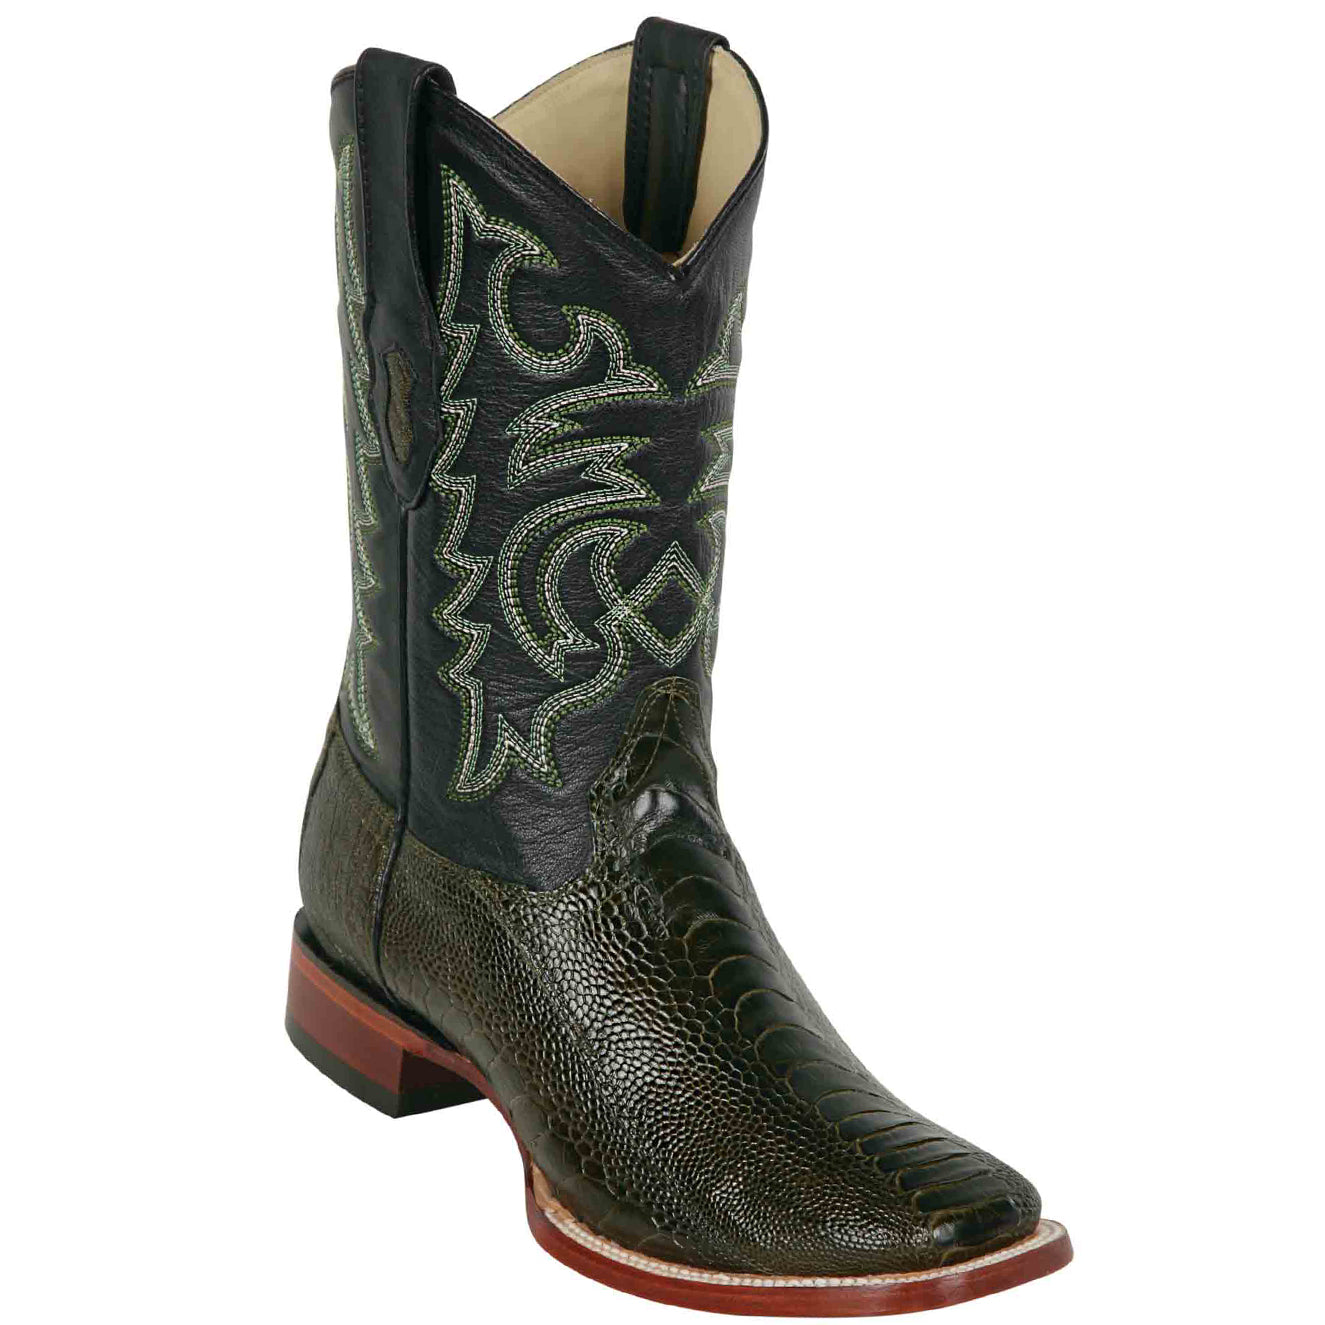 Ostrich Leg Square Toe Cowboy Boots Olive Green - Los Altos Boots